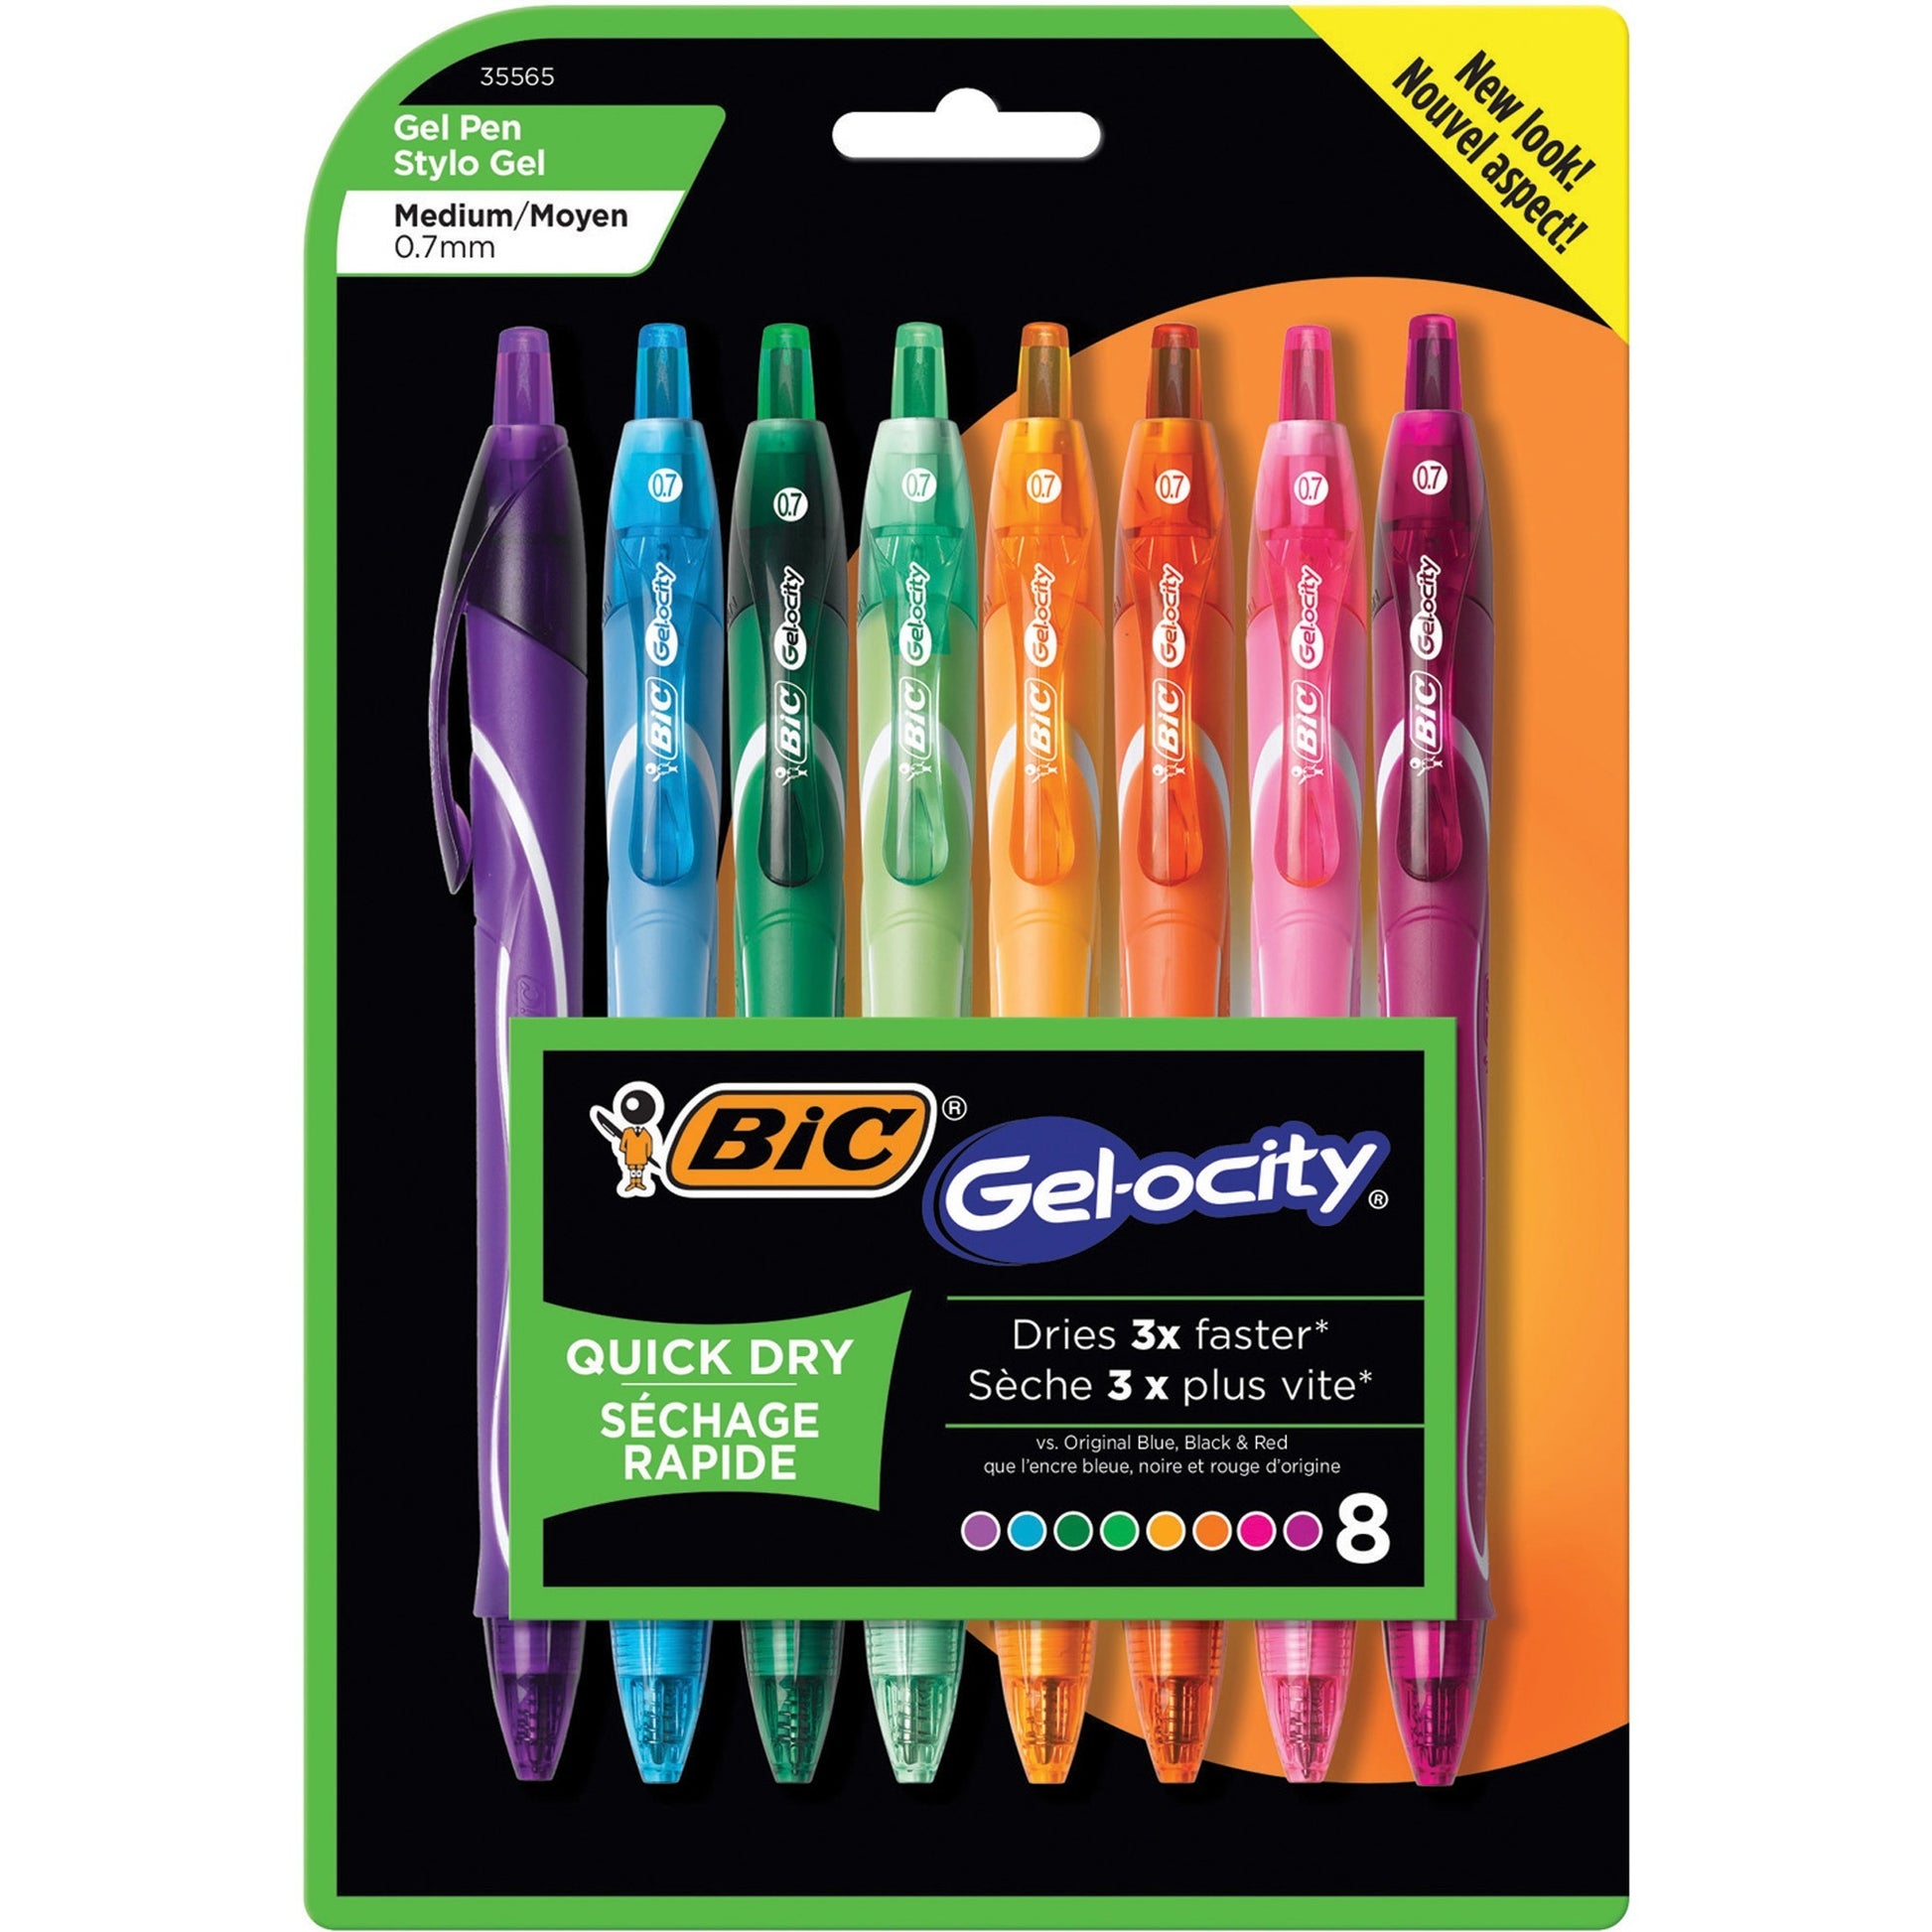 BIC Gel-ocity 0.7mm Retractable Pen